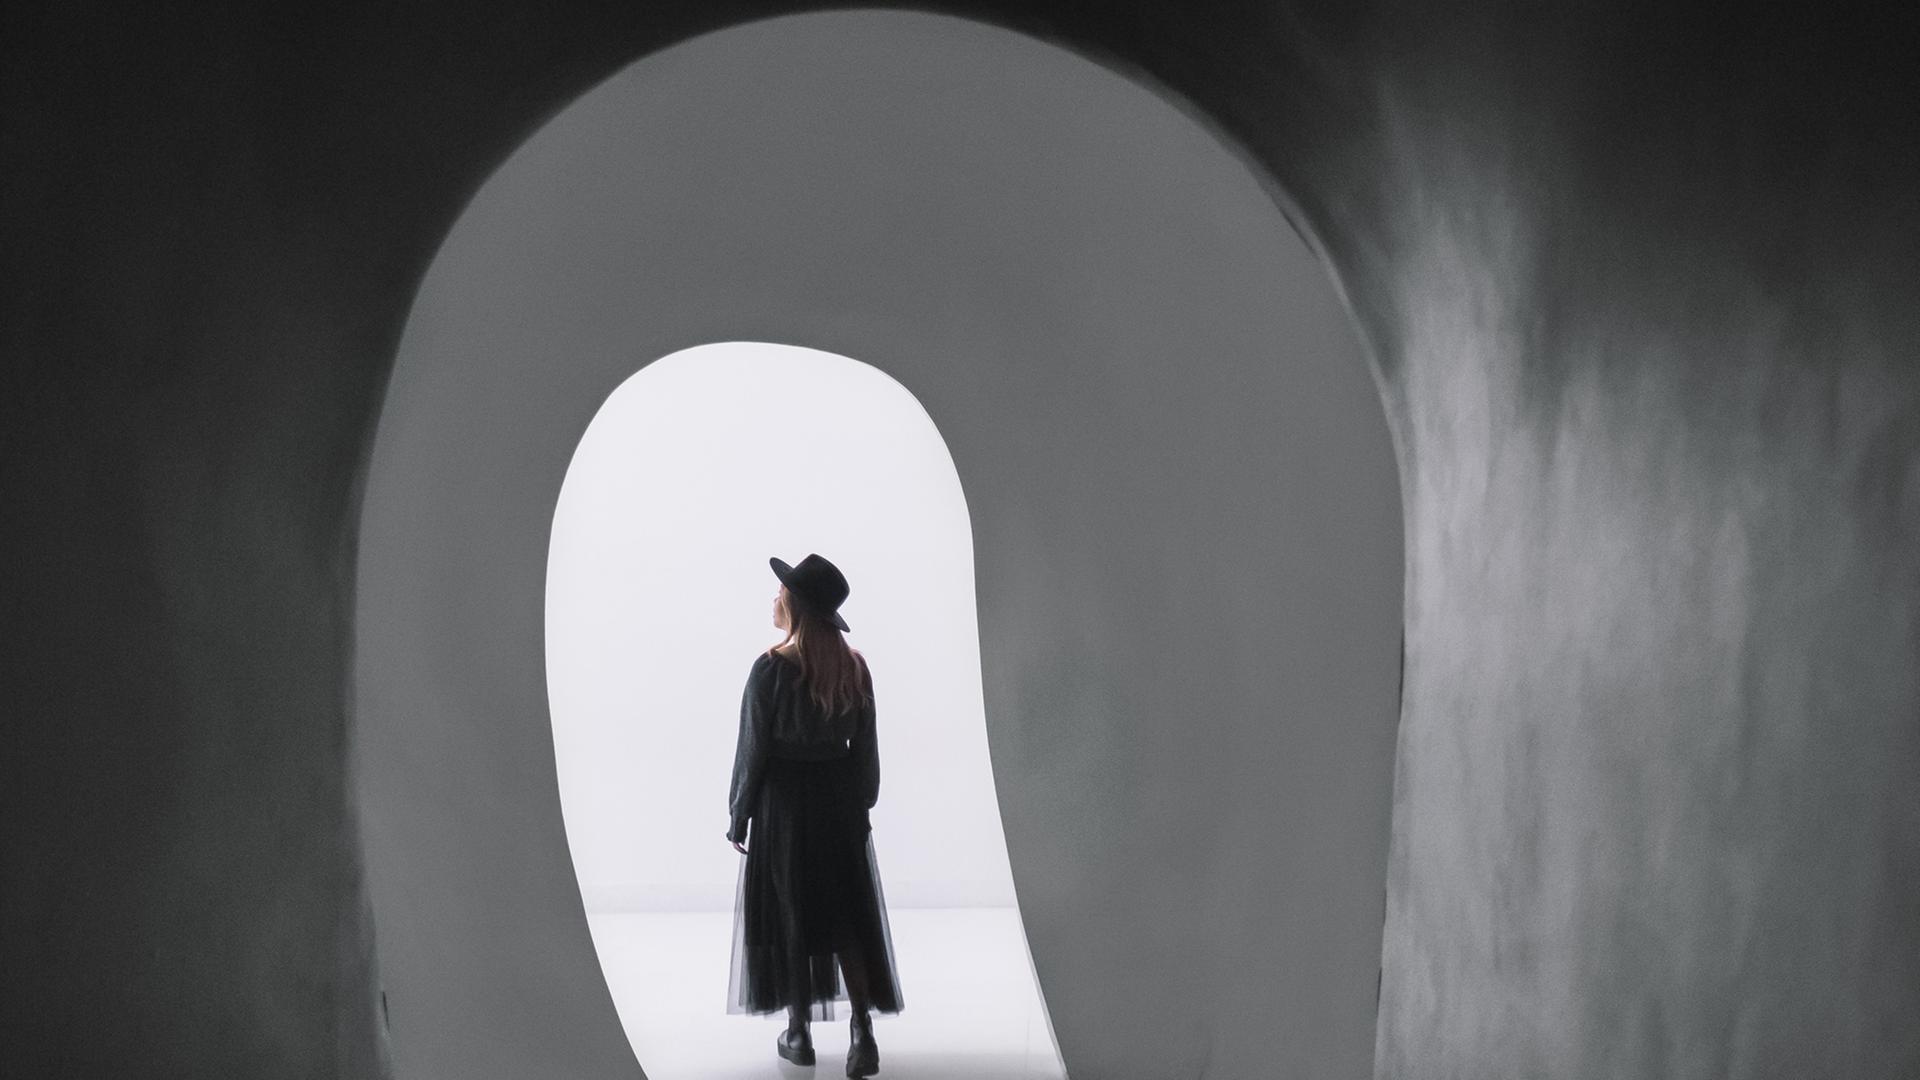 Silke macht sich auf den Weg, Annas Geheimnis zu lüften. Zu sehen: Eine junge Frau mit Schlapphut, kommt aus einem schwarzen Tunnel und geht in die Helligkeit hinein.